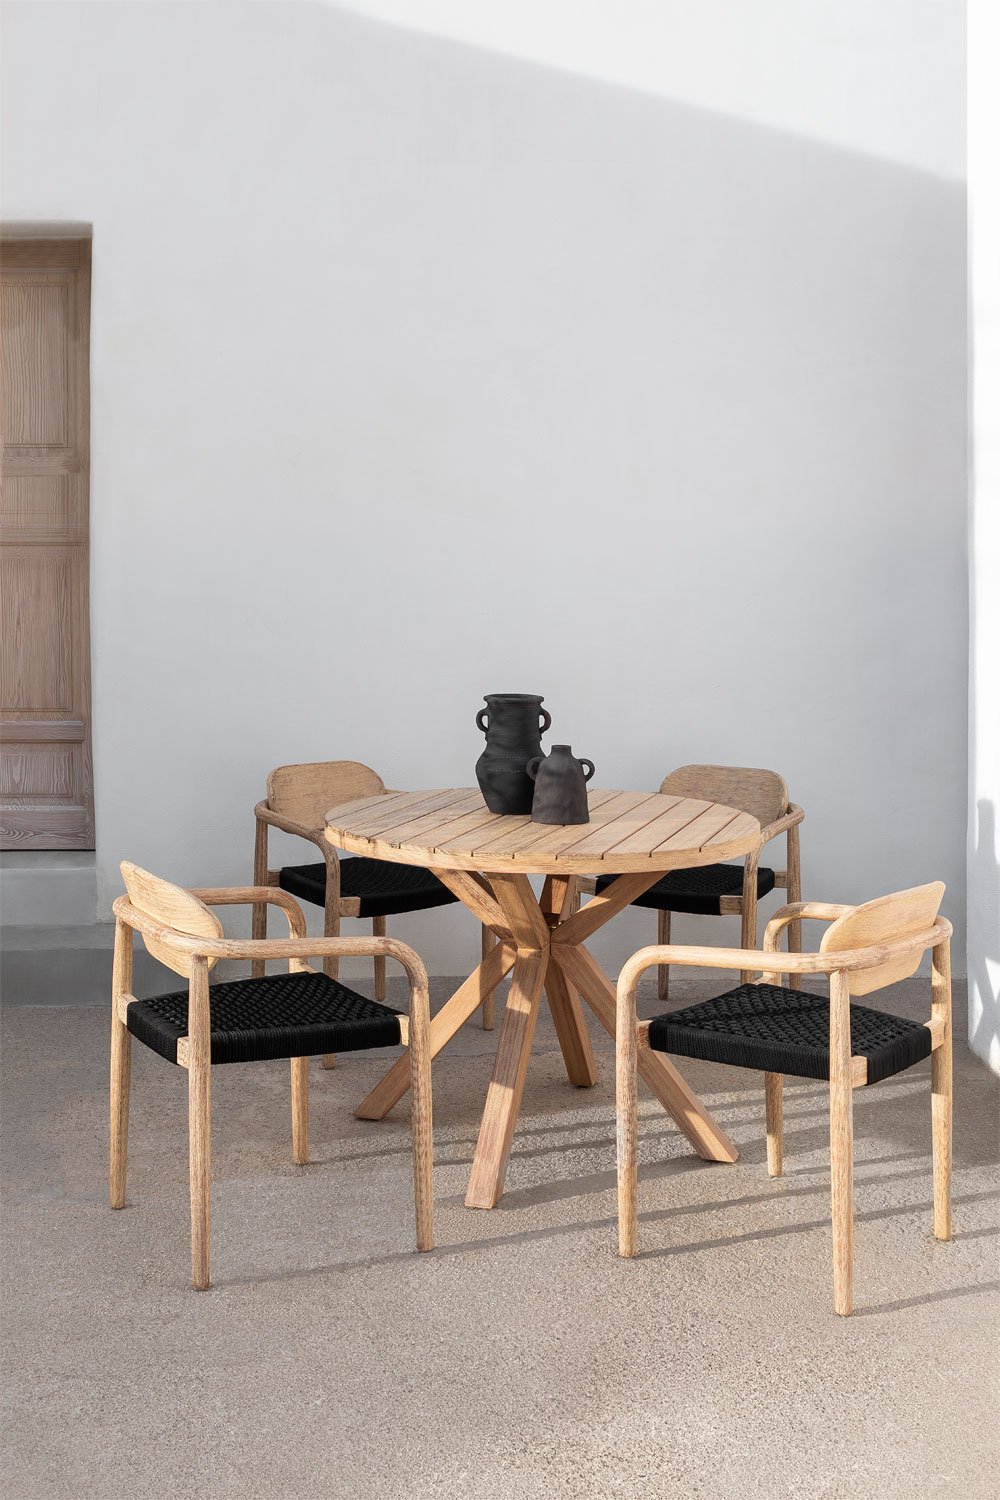 Esszimmergarnitur mit rundem Tisch (Ø 100 cm) und 4 Stühlen aus Holz mit Armlehnen Naele, Galeriebild 1